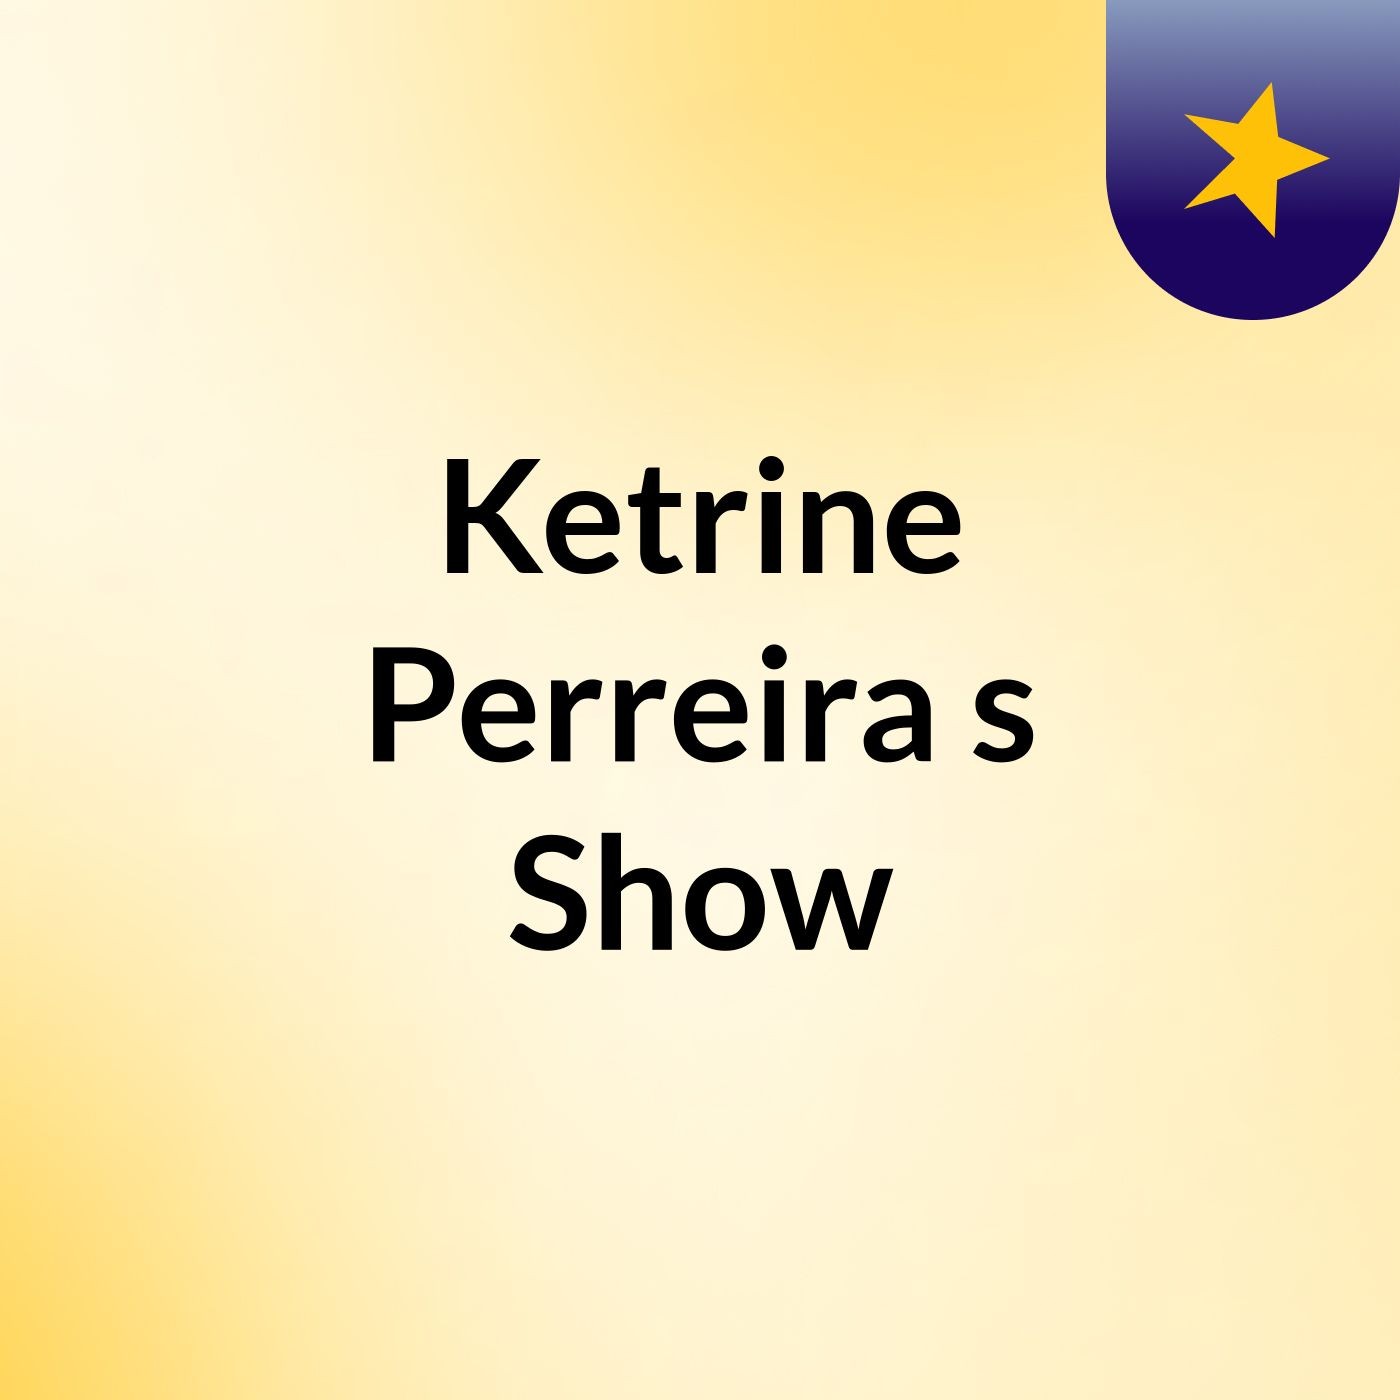 Ketrine Perreira's Show